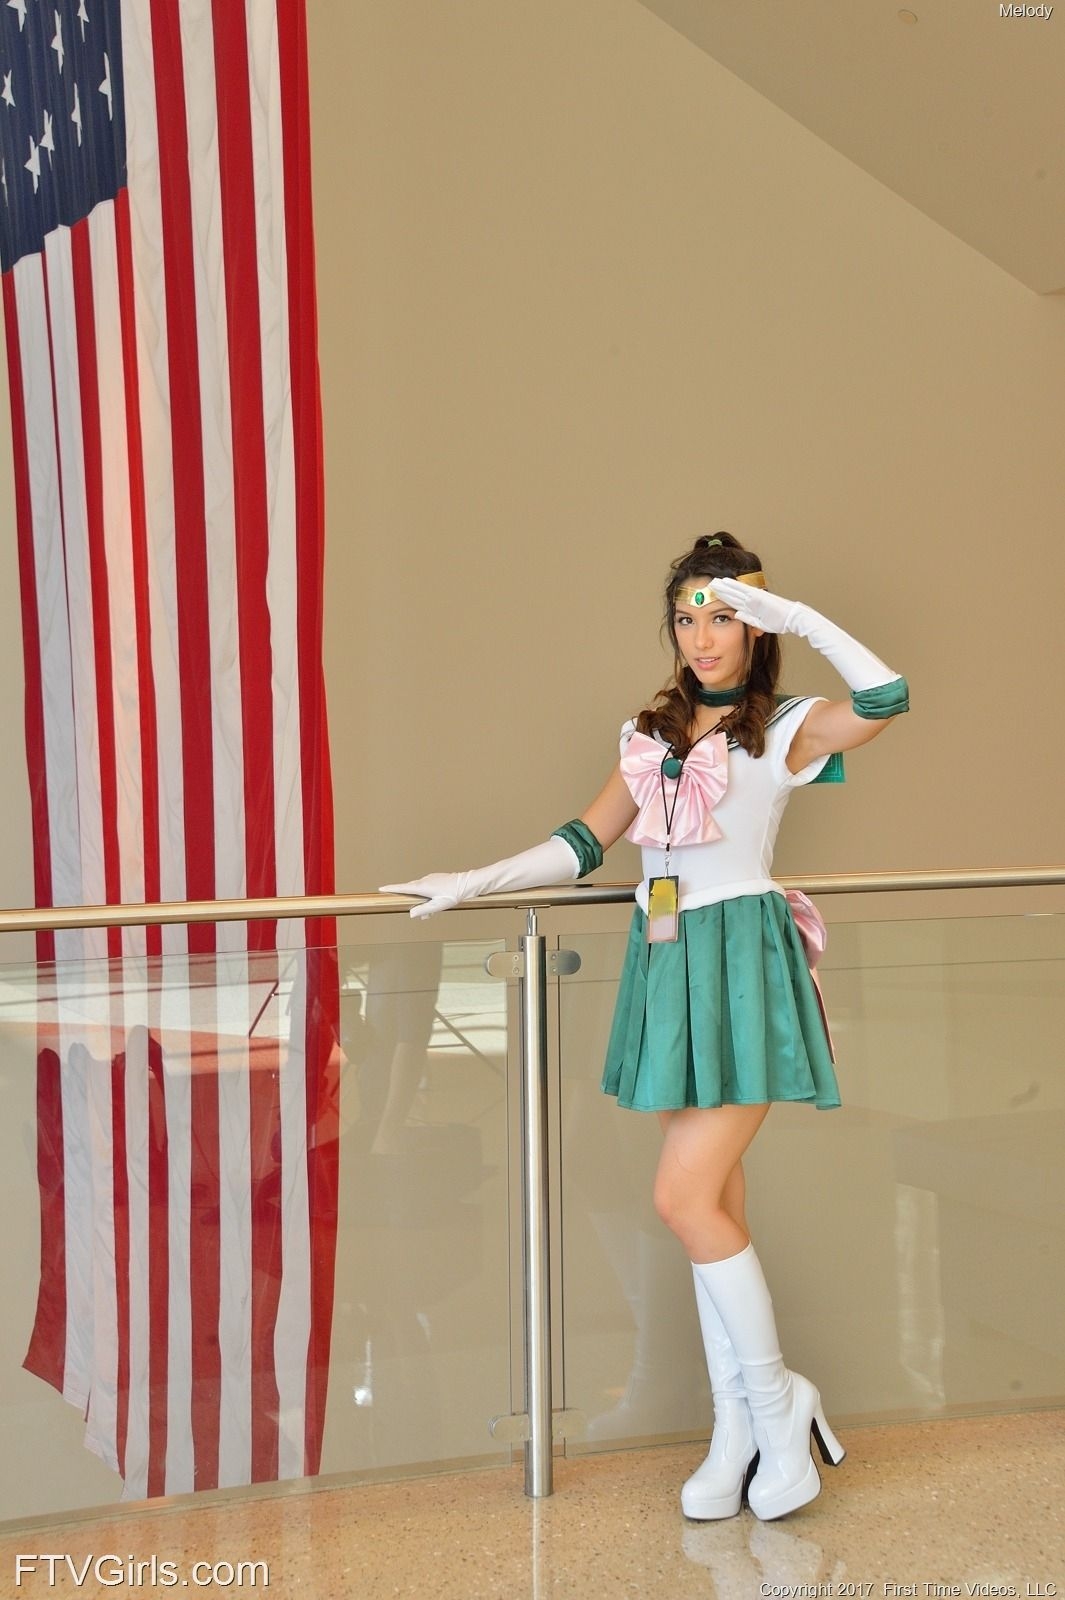 Melody Wylde as Sailor Jupiter 49